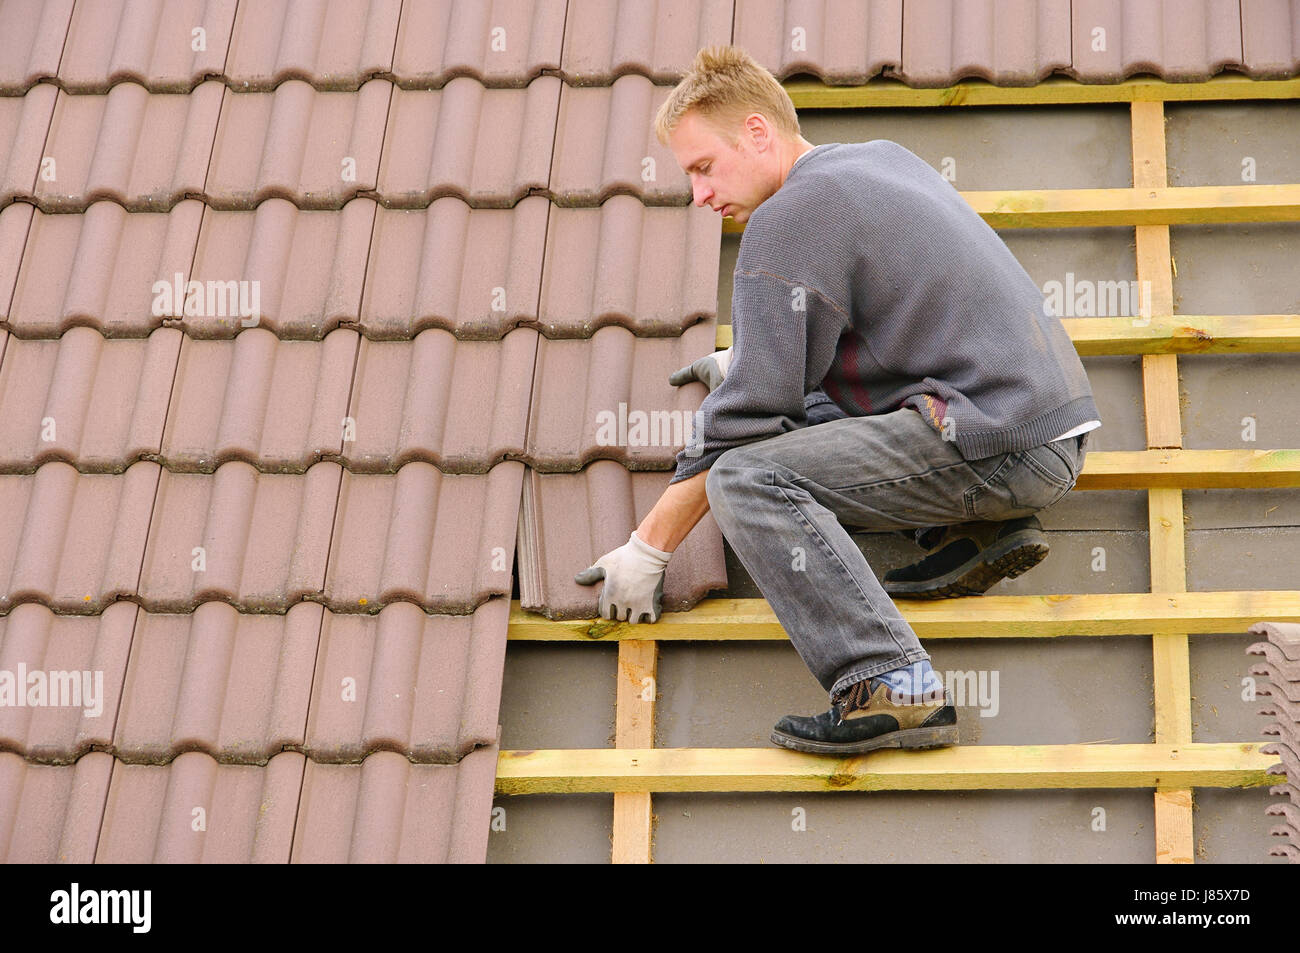 Hausbau Ziegel decken Ziegeldach Dachdecker auf dem Dach Bau Website Haus Stockfoto